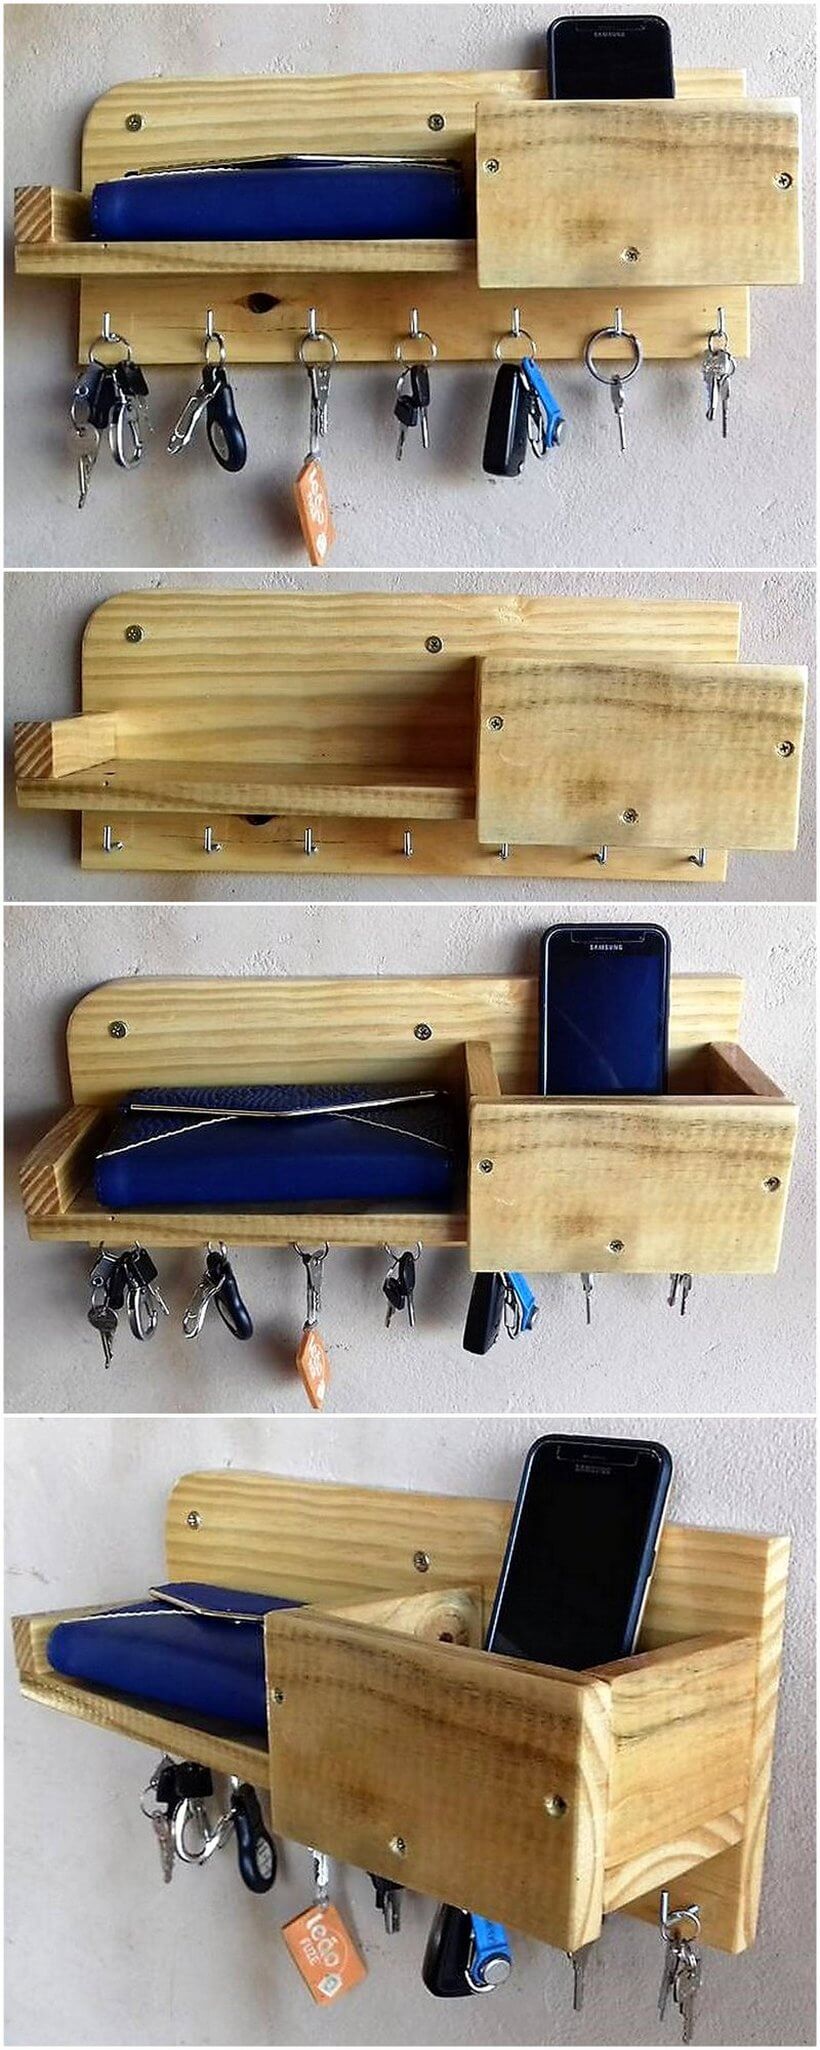 wooden pallet key and mobile holder shelf